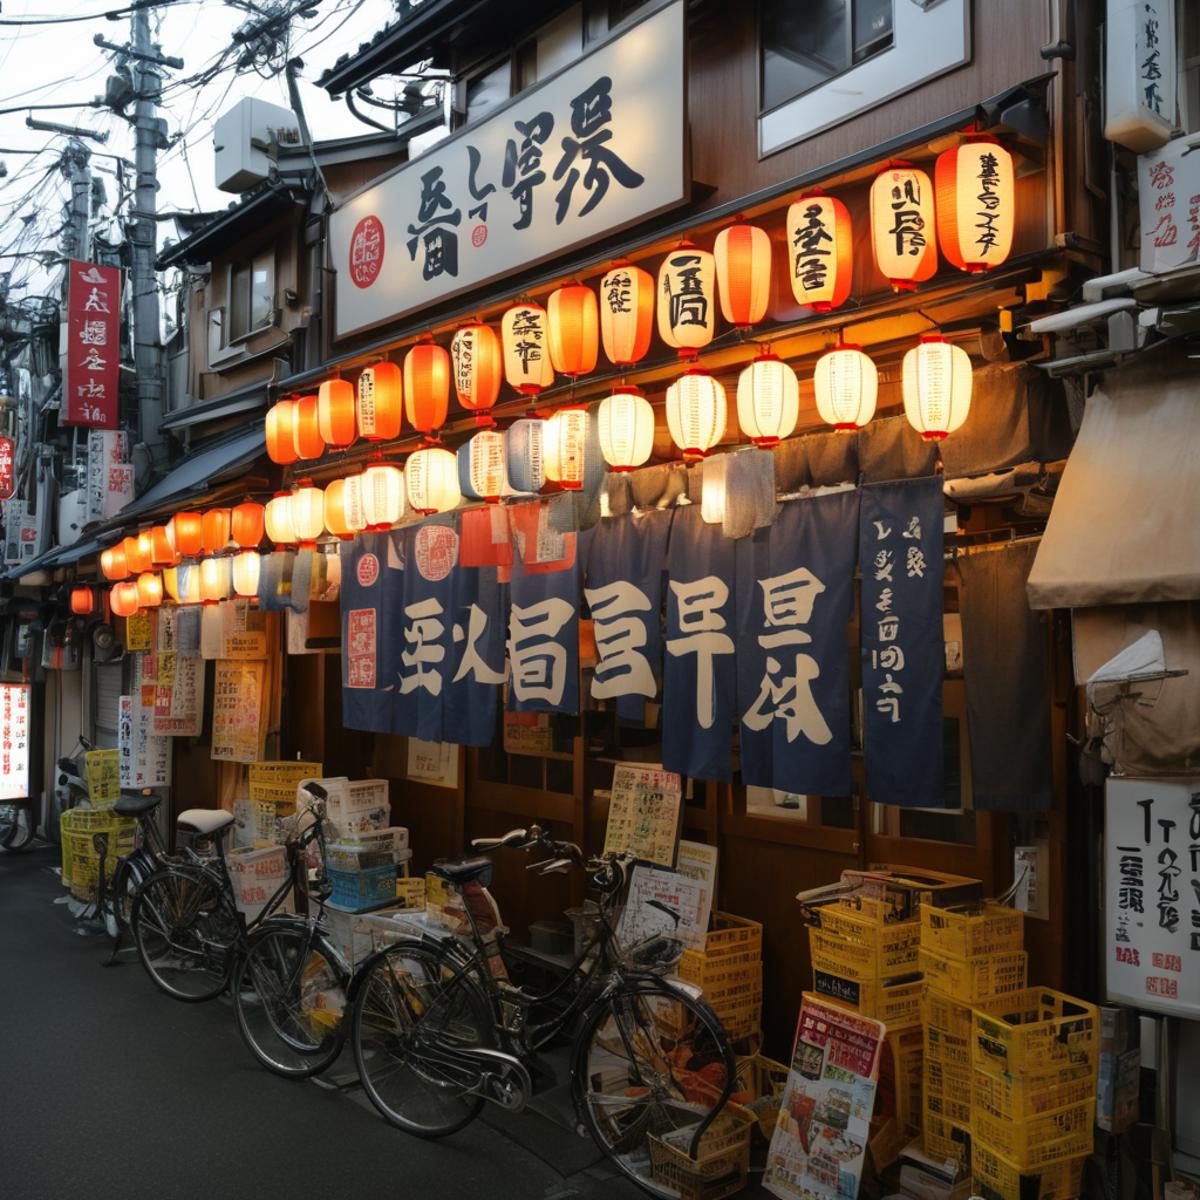 大衆酒場の外観 / Appearance of a popular Japanse tavern SDXL image by swingwings